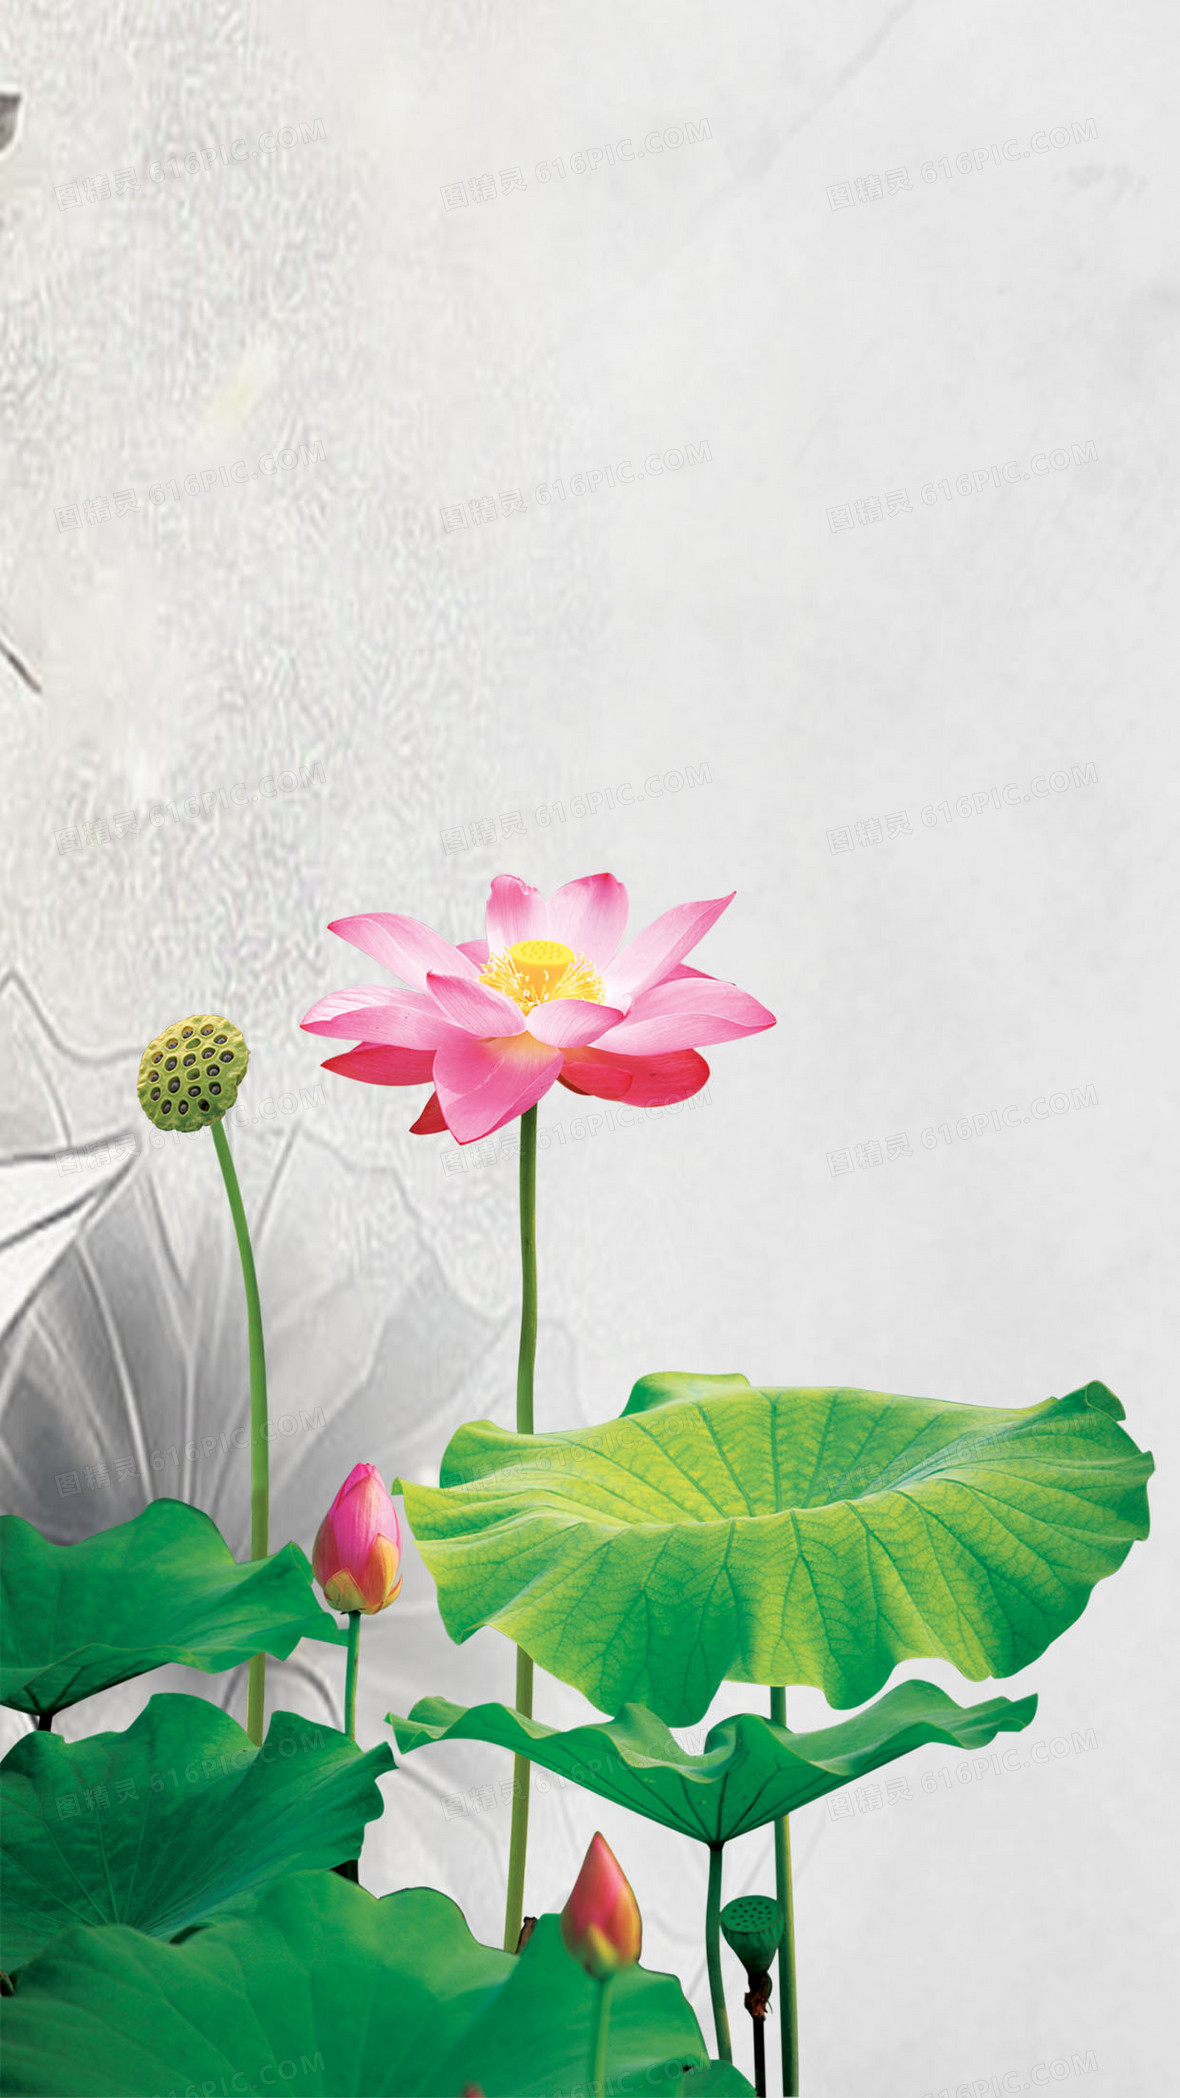 画古典风设计中国风图精灵为您提供水墨荷花免费下载,本背景图片为